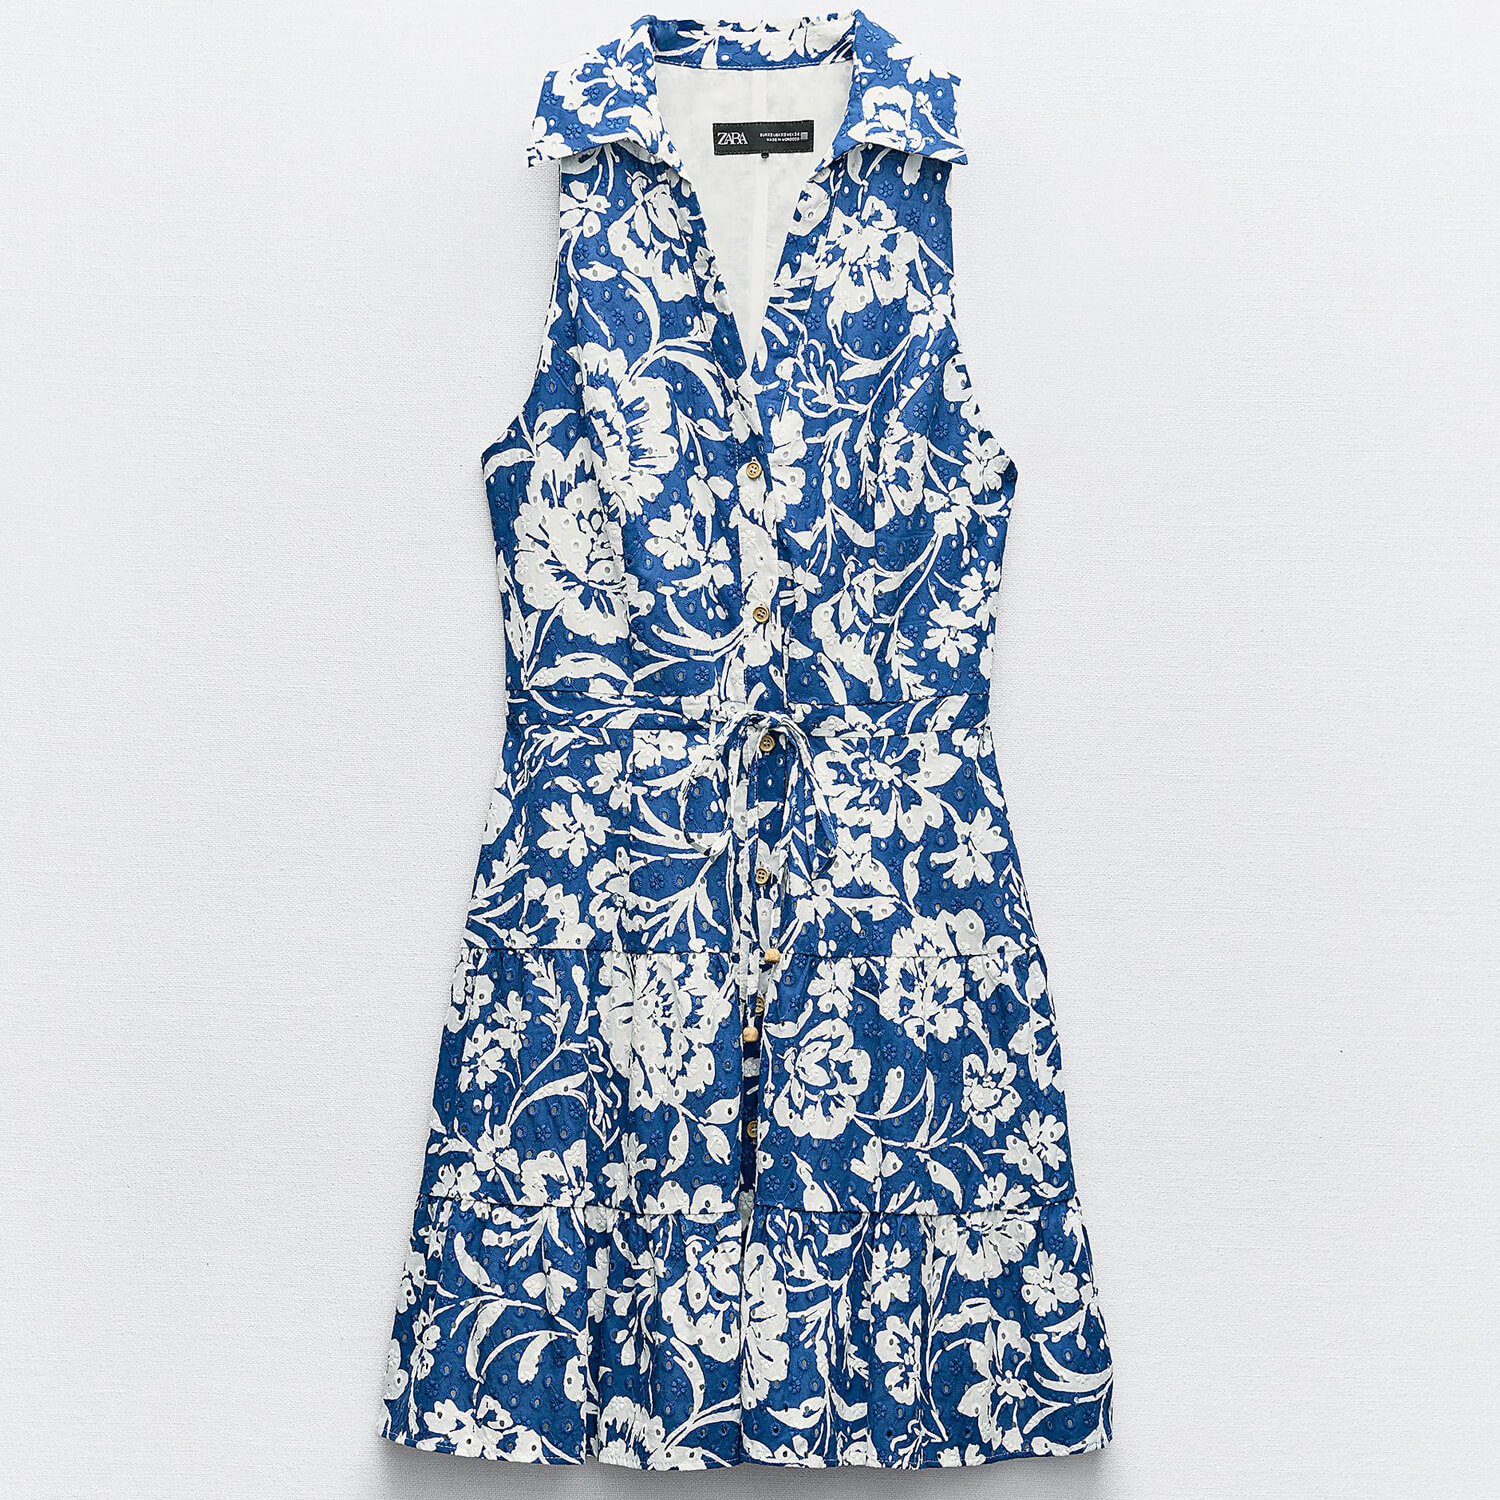 Платье Zara Printed Mini With Cutwork Embroidery, синий/белый жилет женский классический двубортный с отложным воротником без рукавов